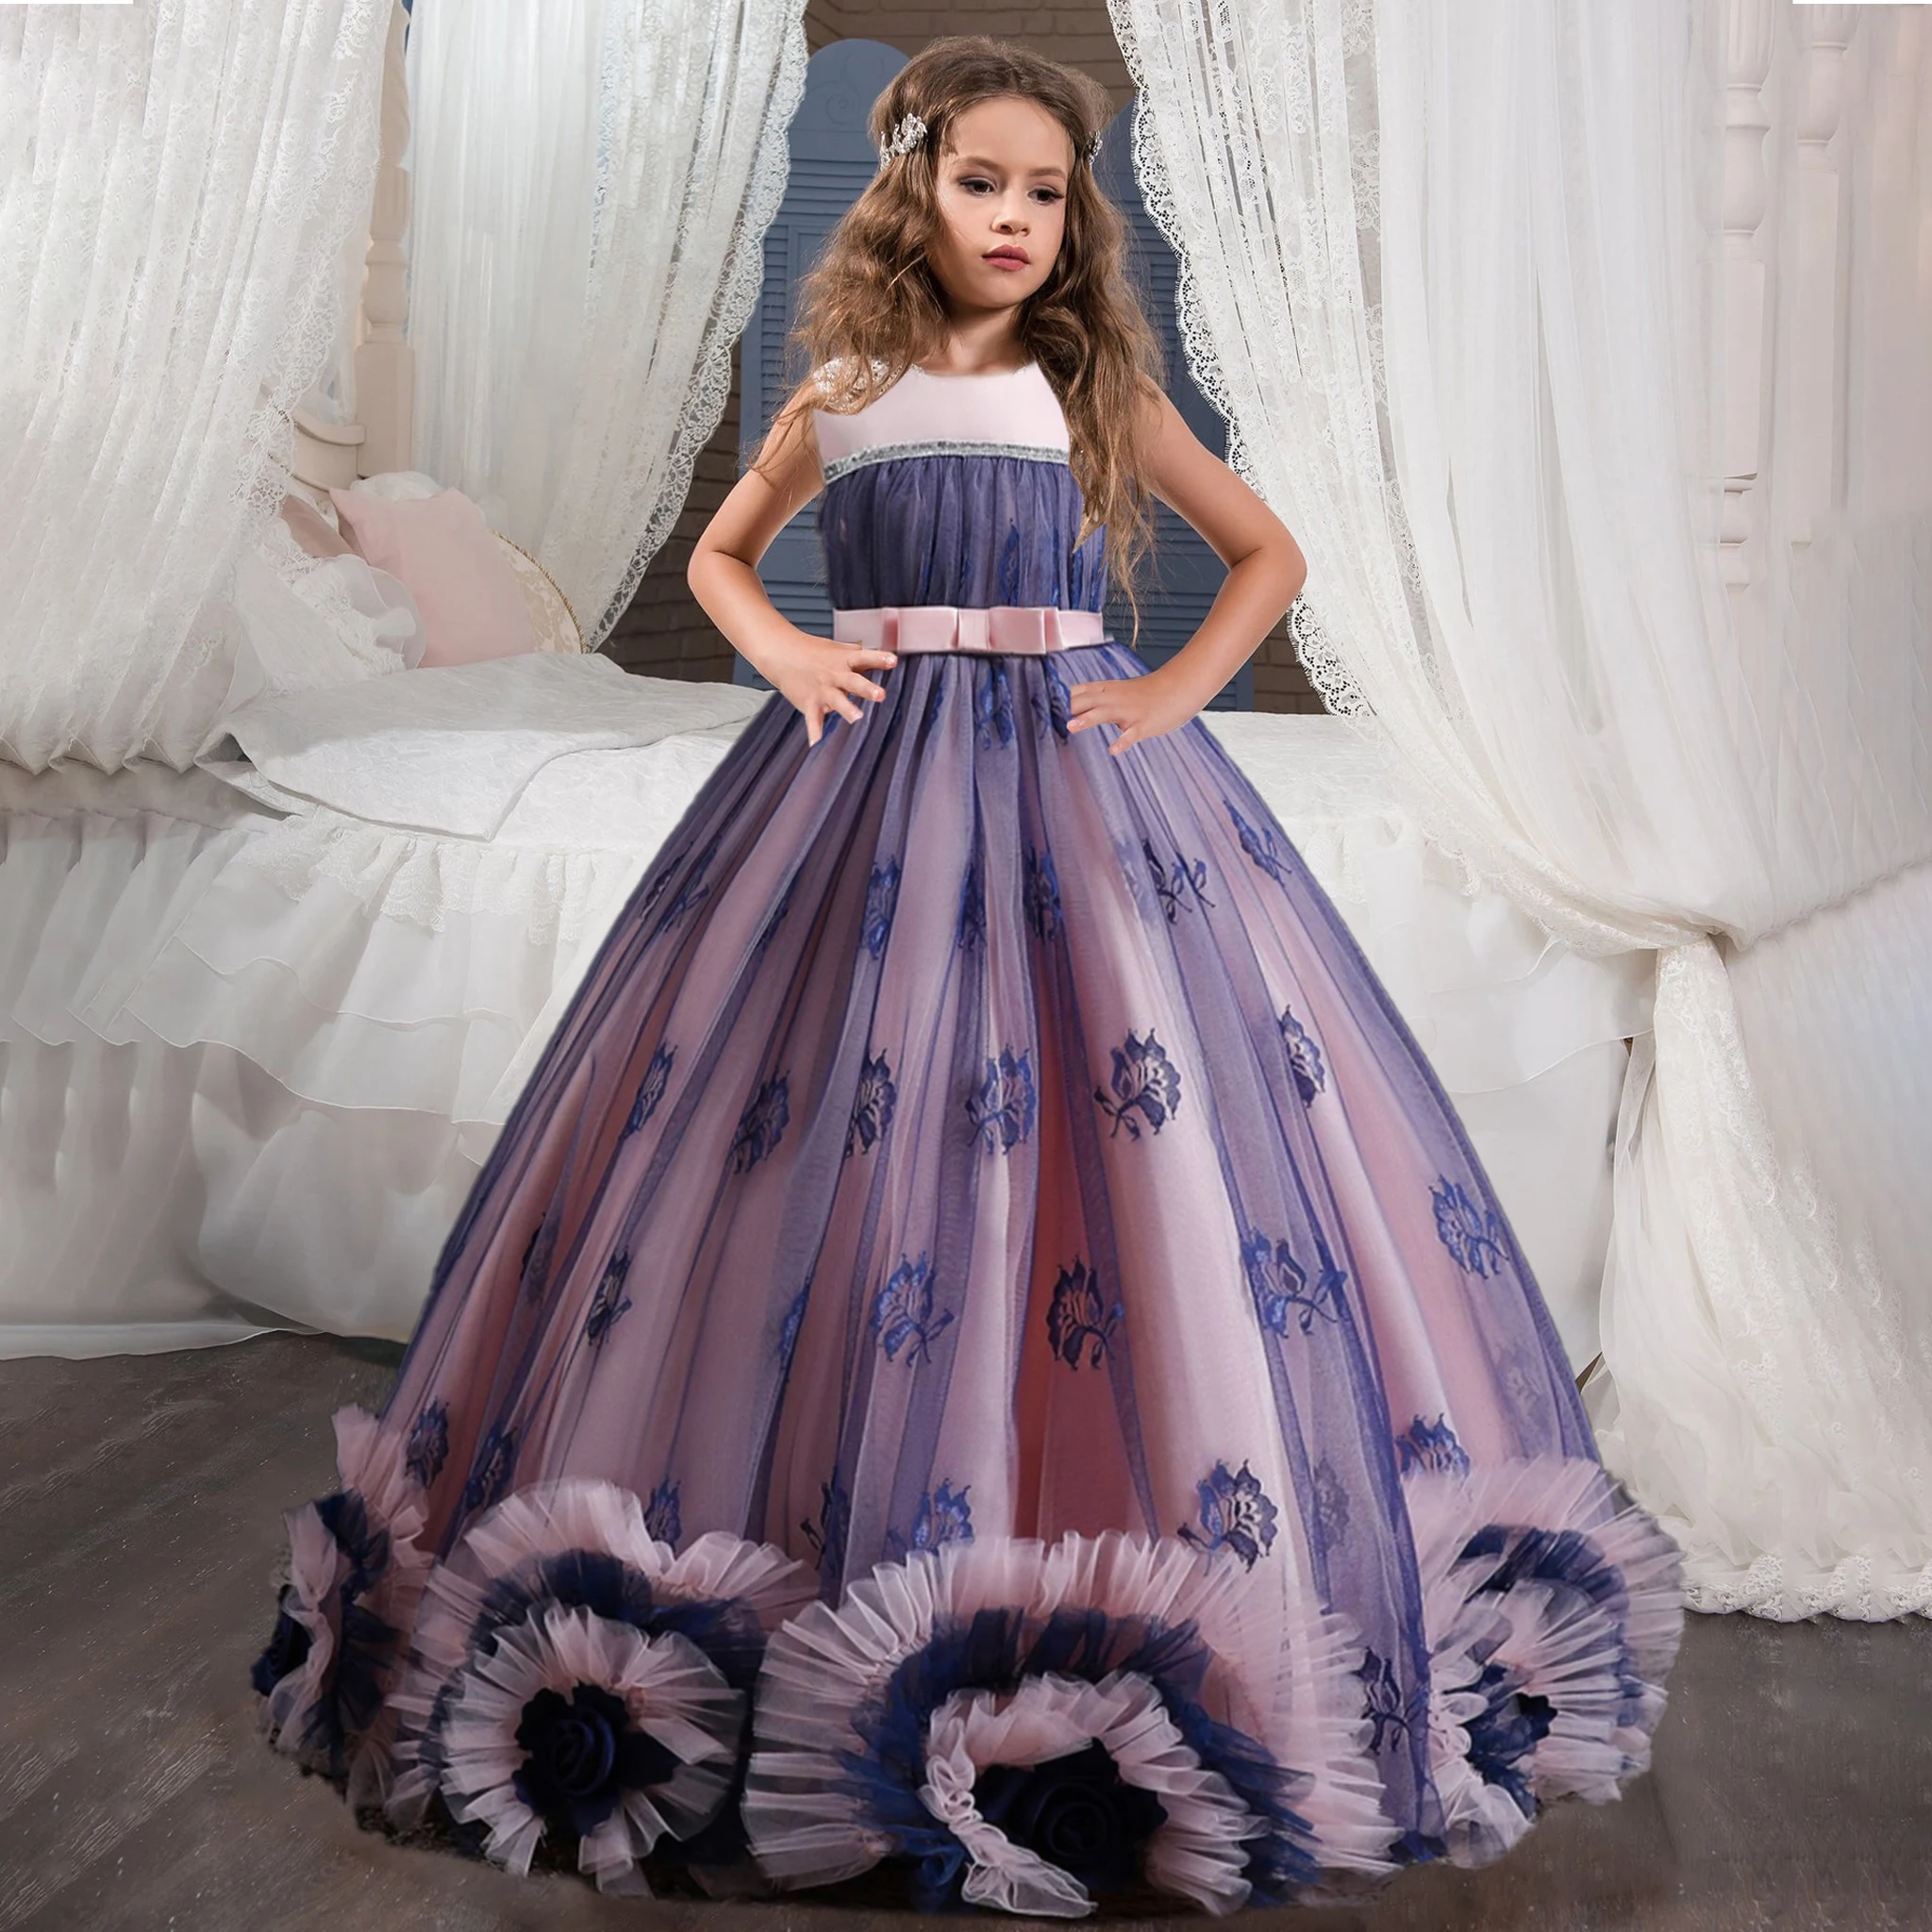 שמלת פלאפי לילדות בצבע סגול/ורוד מנופחת ללא שרוולים, אורך מקסי בעיצוב מיוחד  - יותר מ 600 שמלות לילדות במקום אחד - KIDES.CO.IL